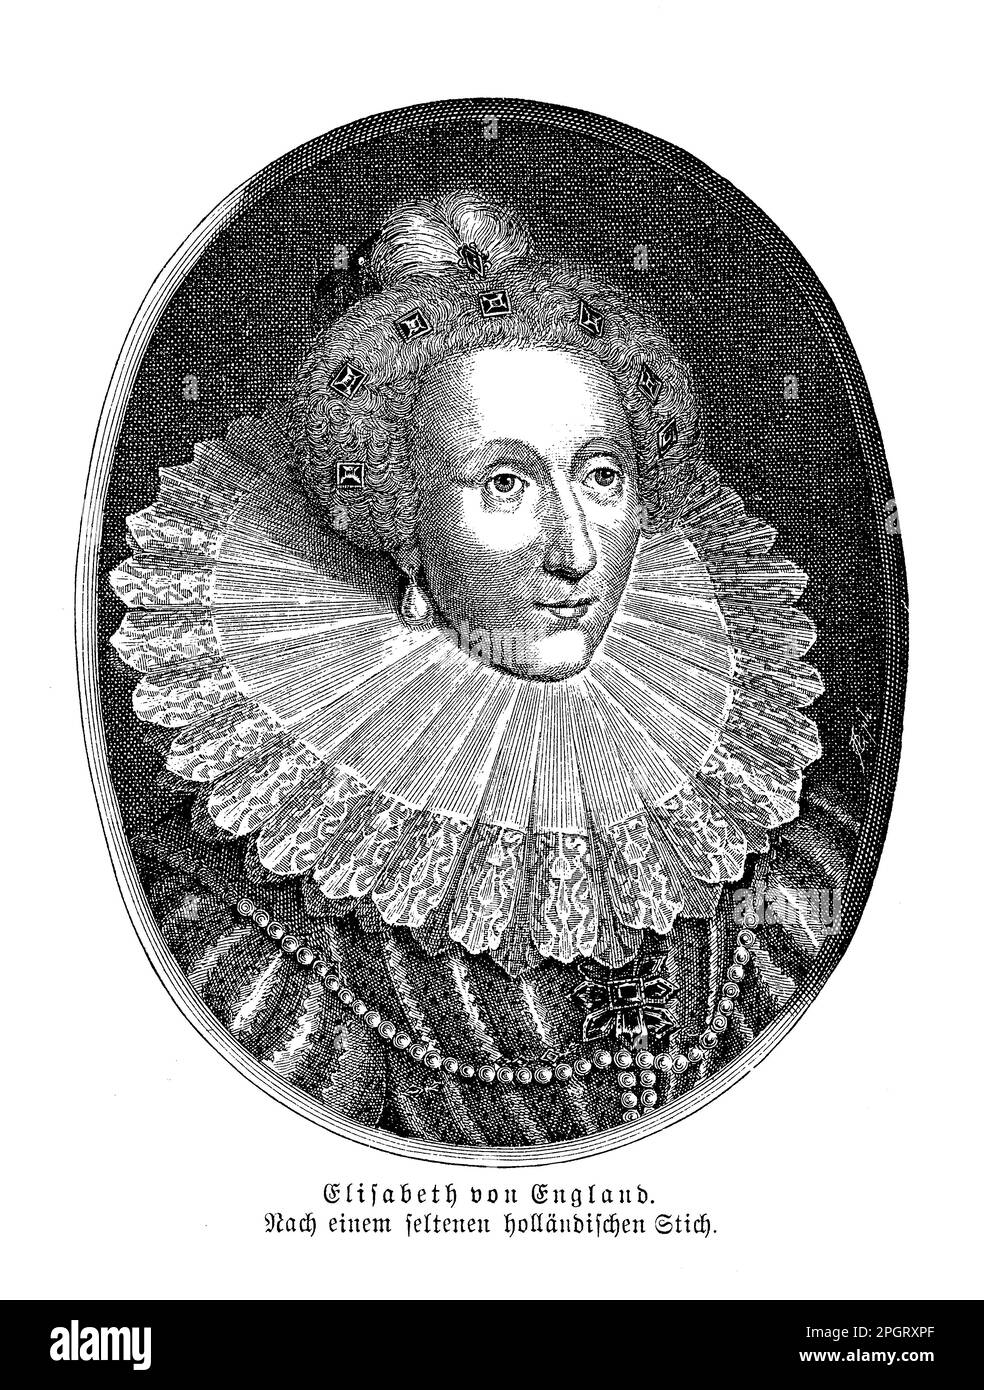 Elisabetta i d'Inghilterra in un raro ritratto olandese fu uno dei monarchi più potenti e di successo della storia inglese. Regnò dal 1558-1603 e supervisionò il fiorire della cultura rinascimentale inglese, la sconfitta dell'Armada spagnola e l'istituzione della Chiesa anglicana. Foto Stock